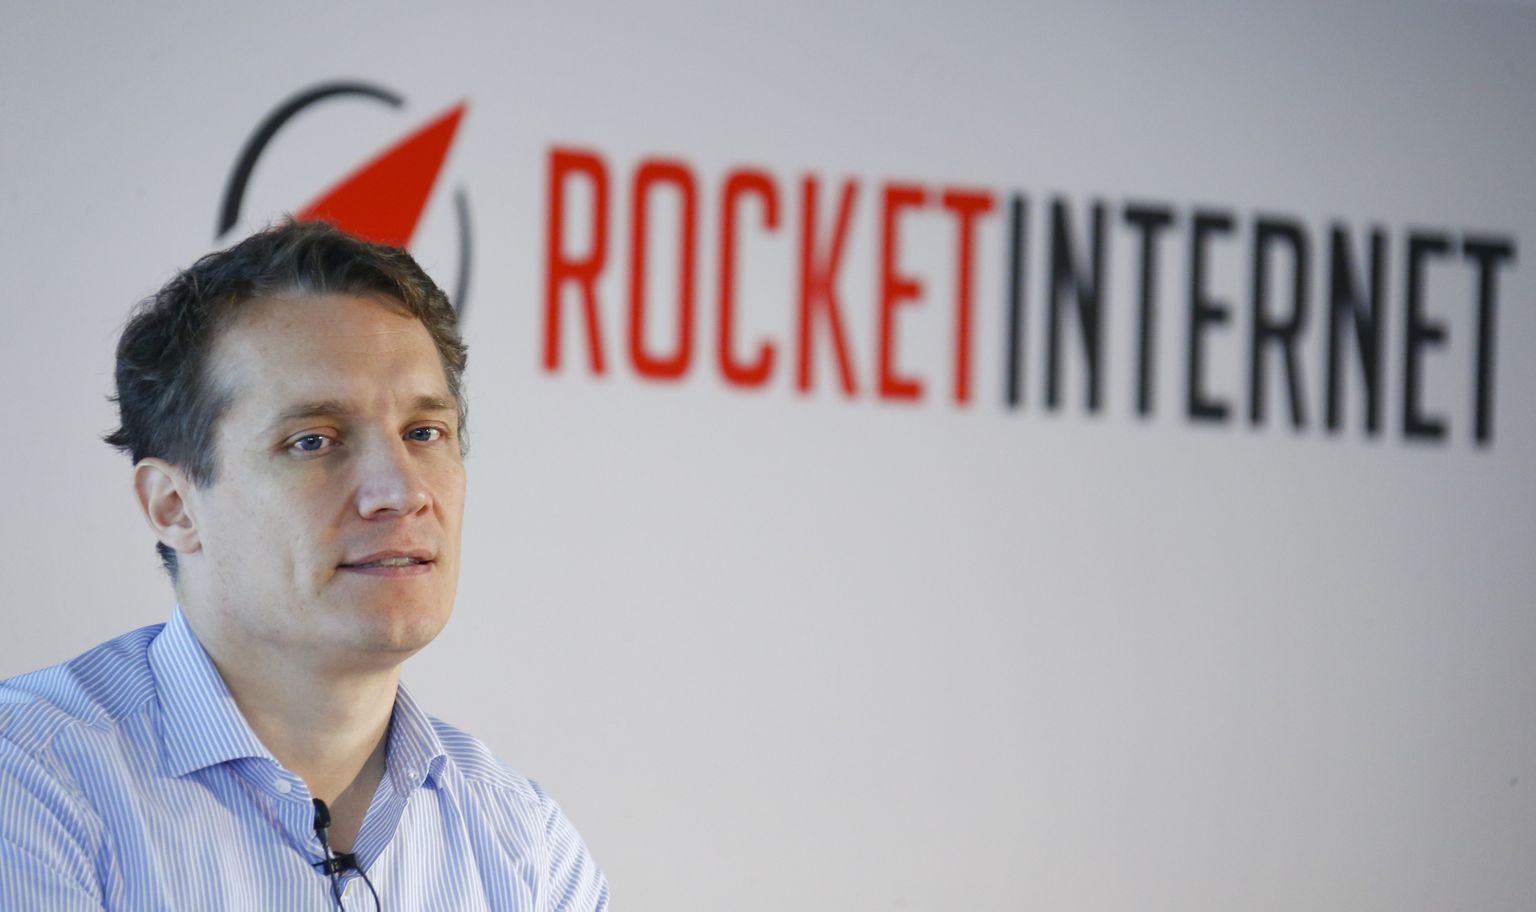 Rocket Interneti juht Oliver Samwer tahab firma börsilt odavalt ära viia. Rocket Interneti investeeringute hulka kuuluvad sellised nimed nagu Hello Fresh, Delivery Hero, Zalando ja Lendico.